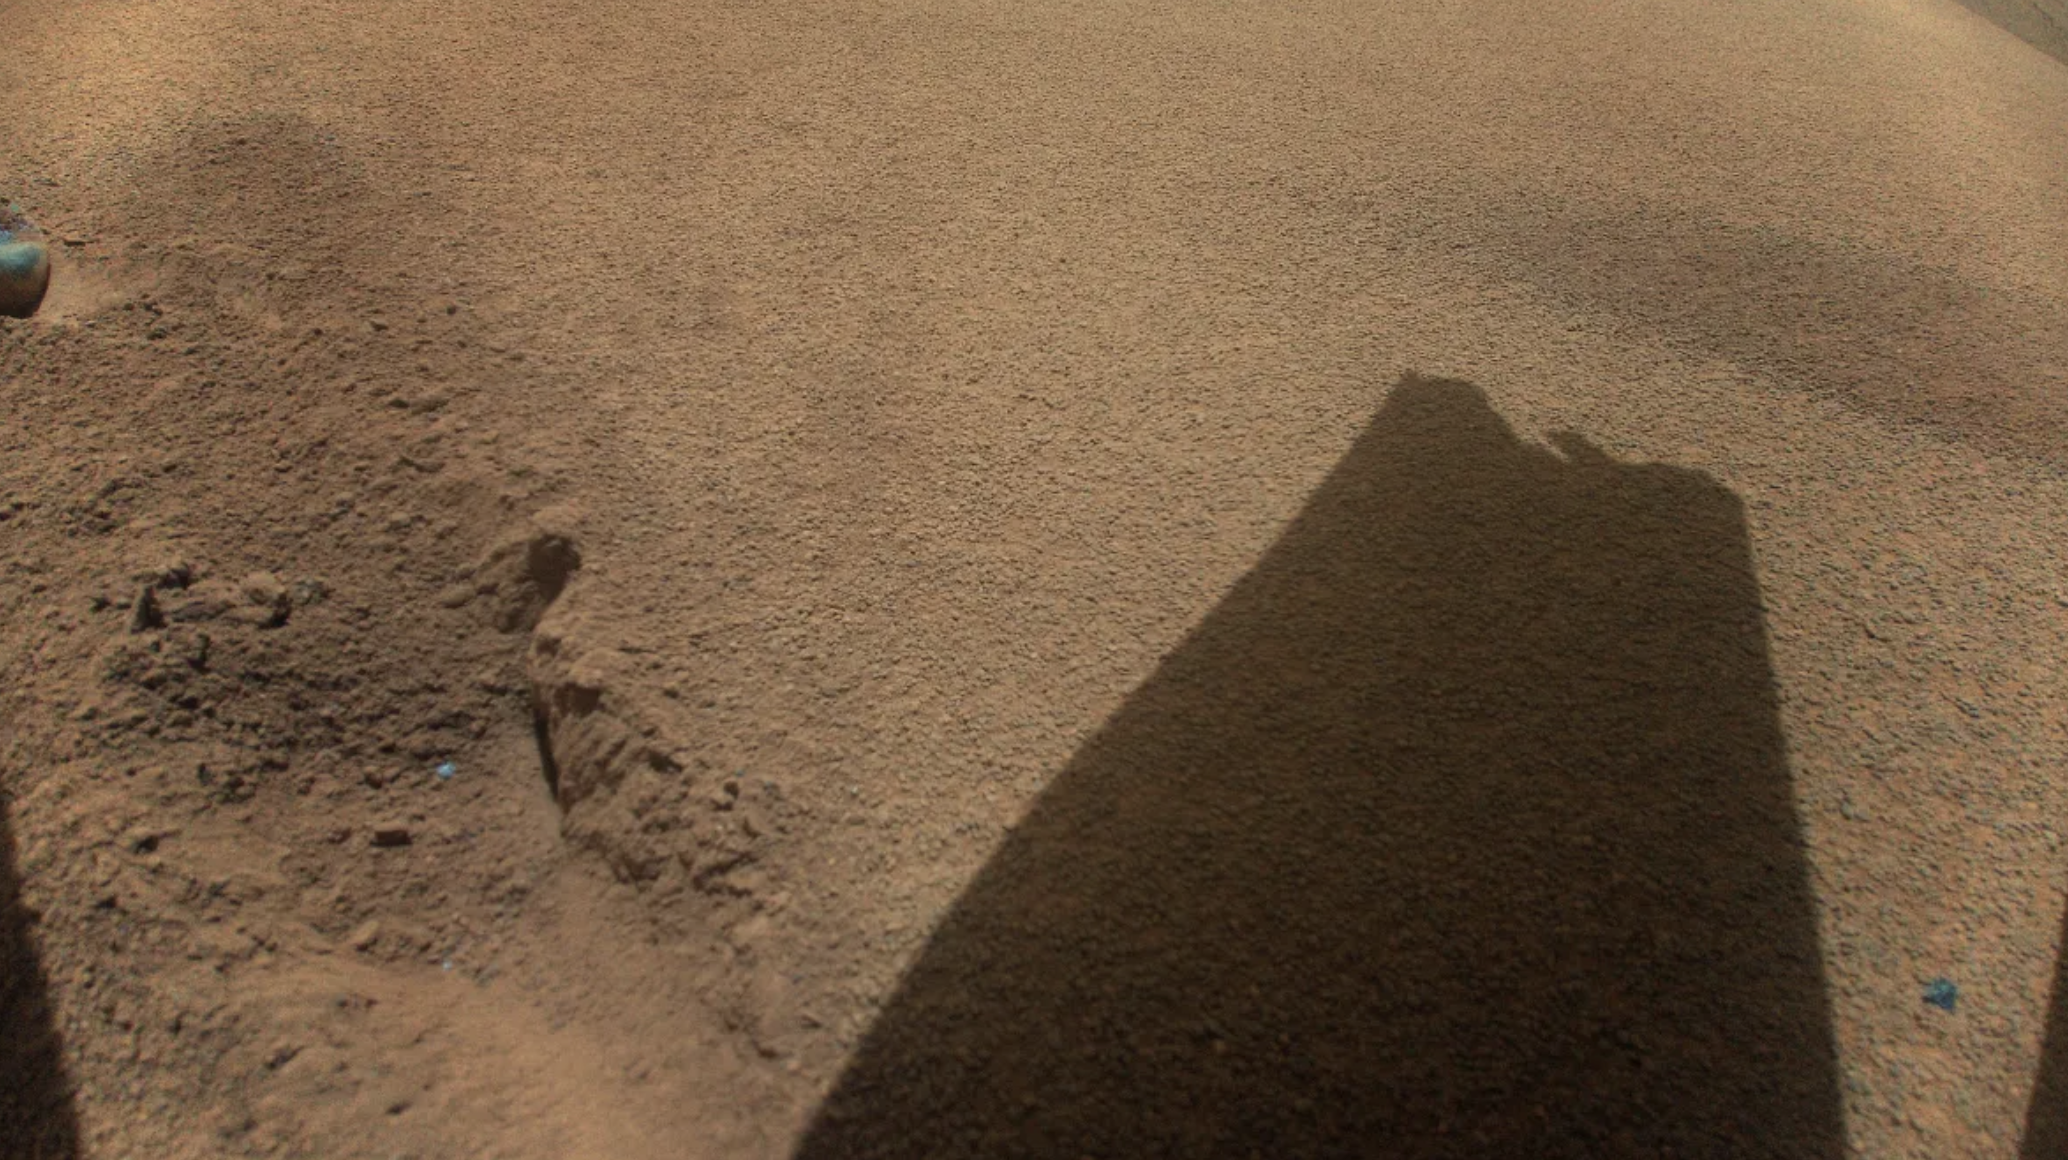 Imagen de una sombra sobre la superficie marciana captada por el helicóptero Ingenuity.